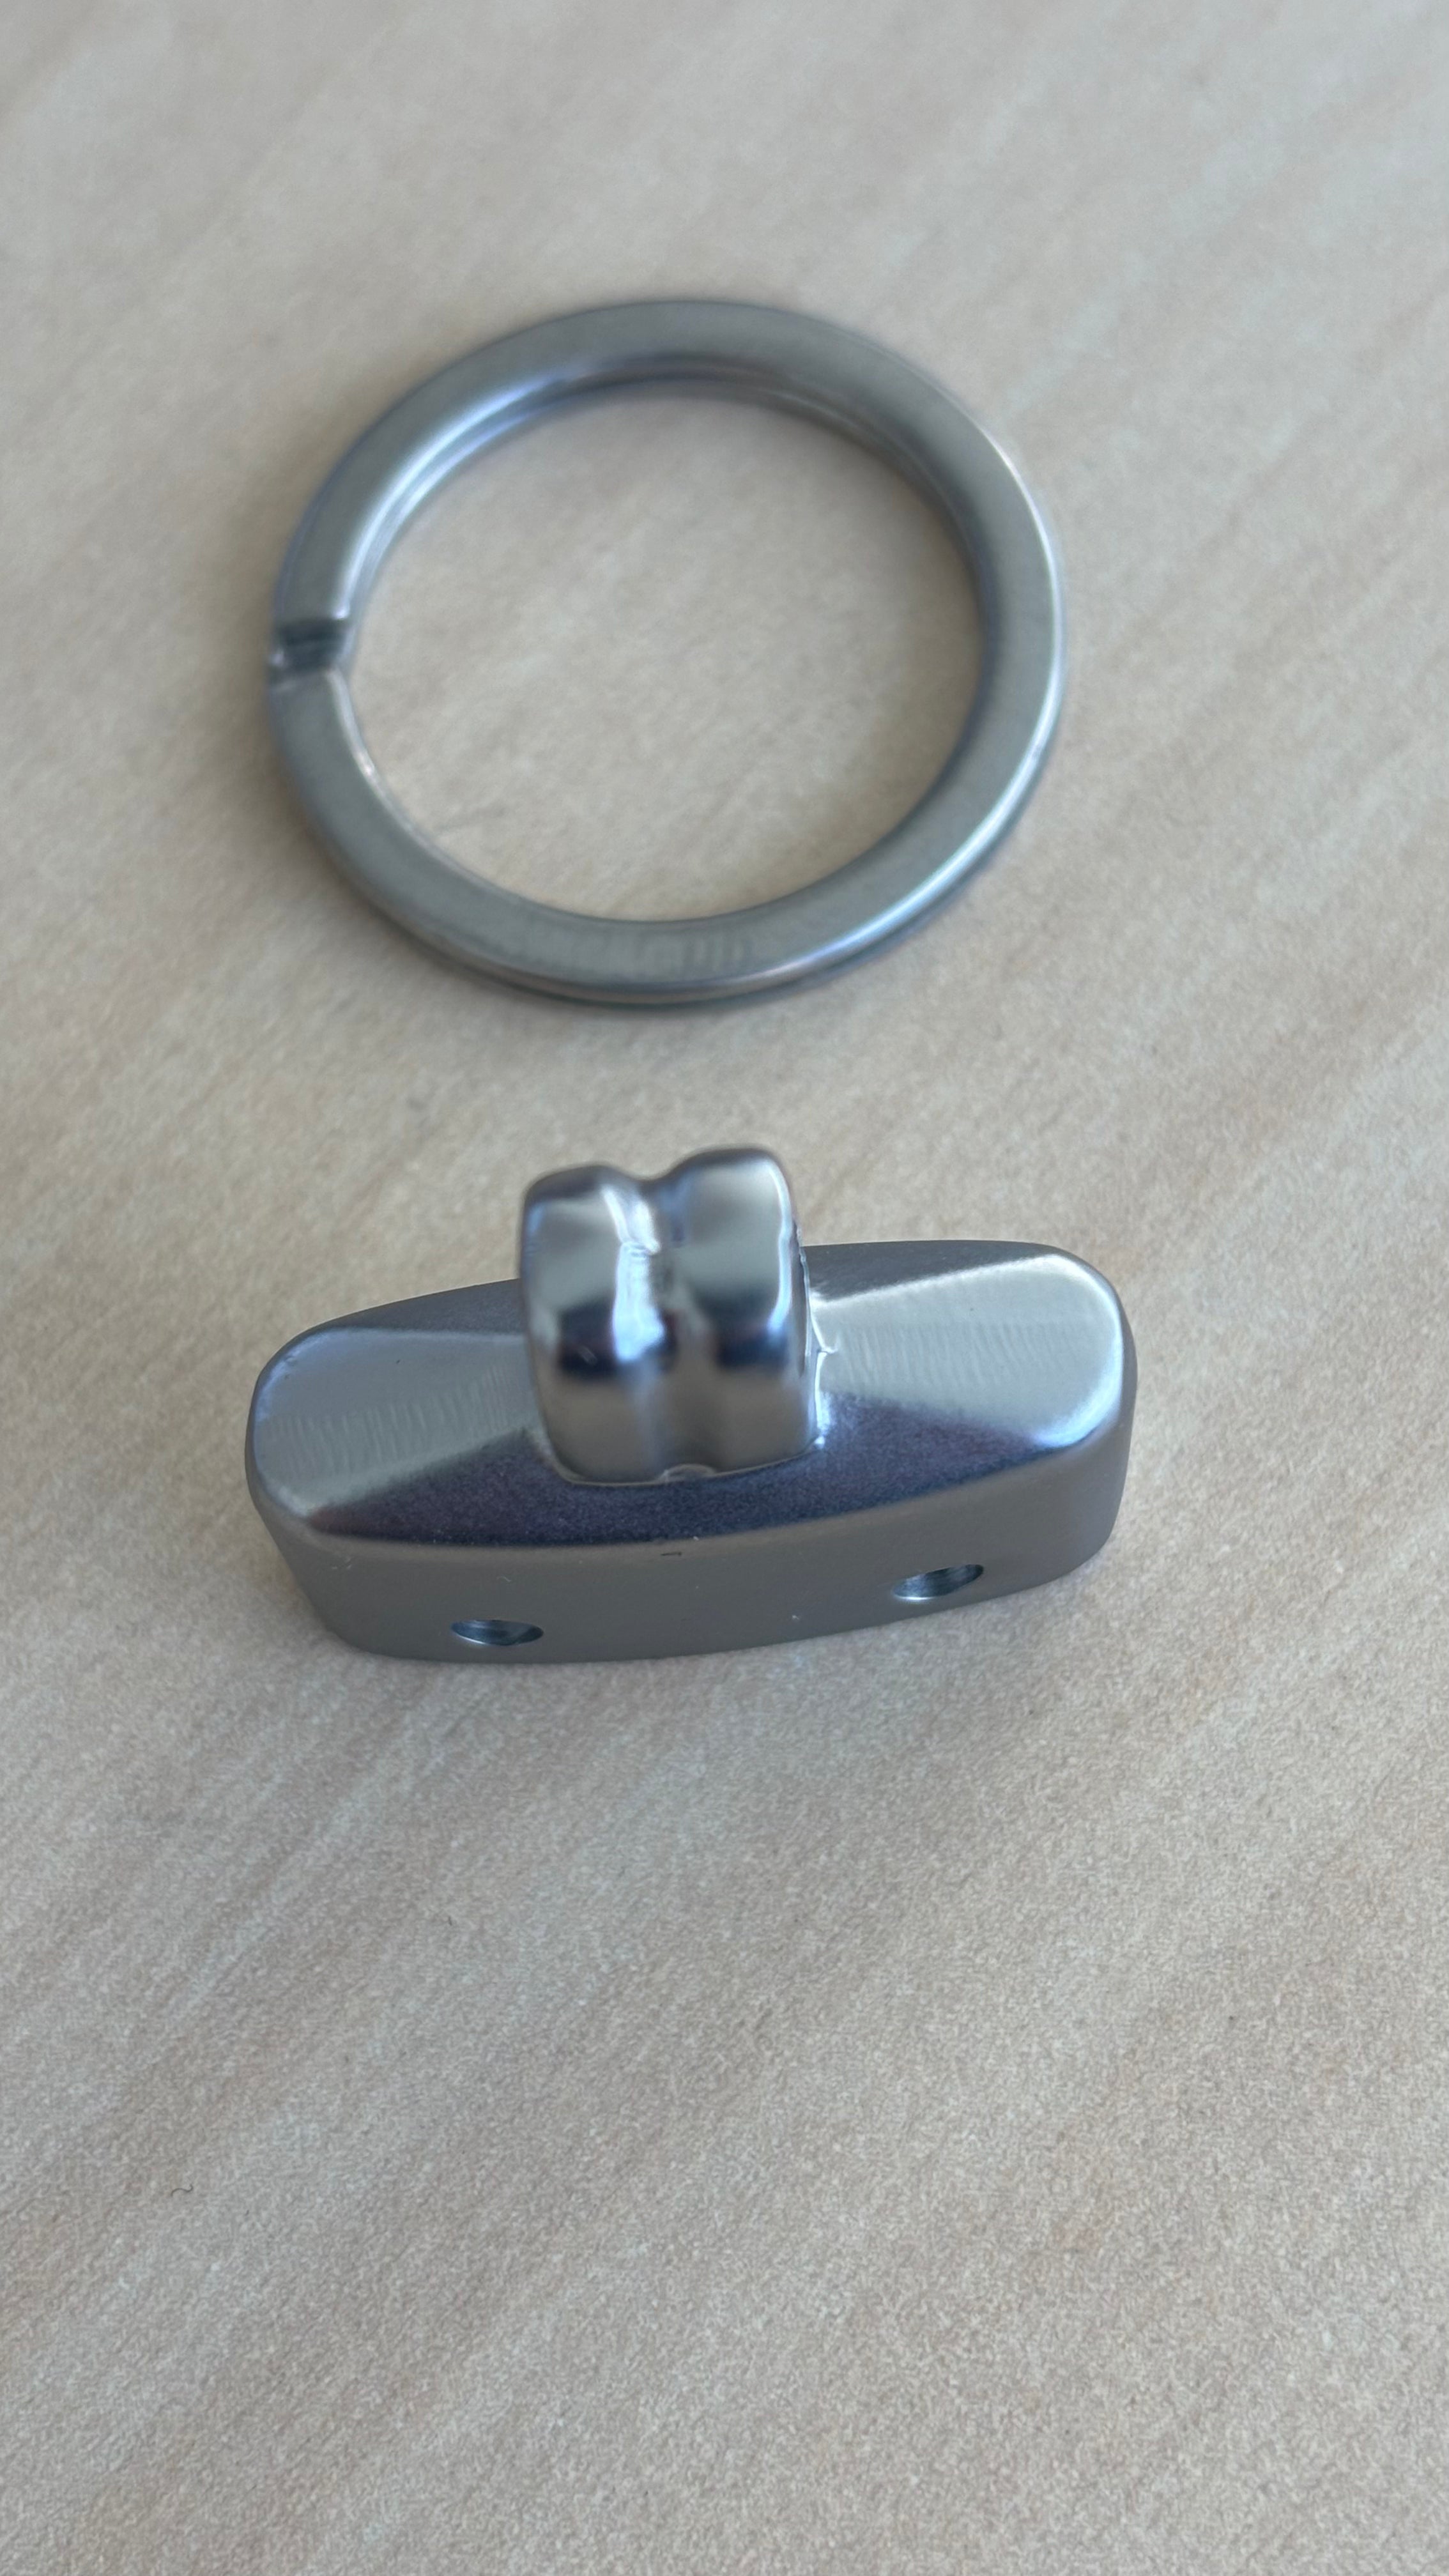 Metal key ring holder Nikkel brushed 2.6 cm long 0.6 cm wide